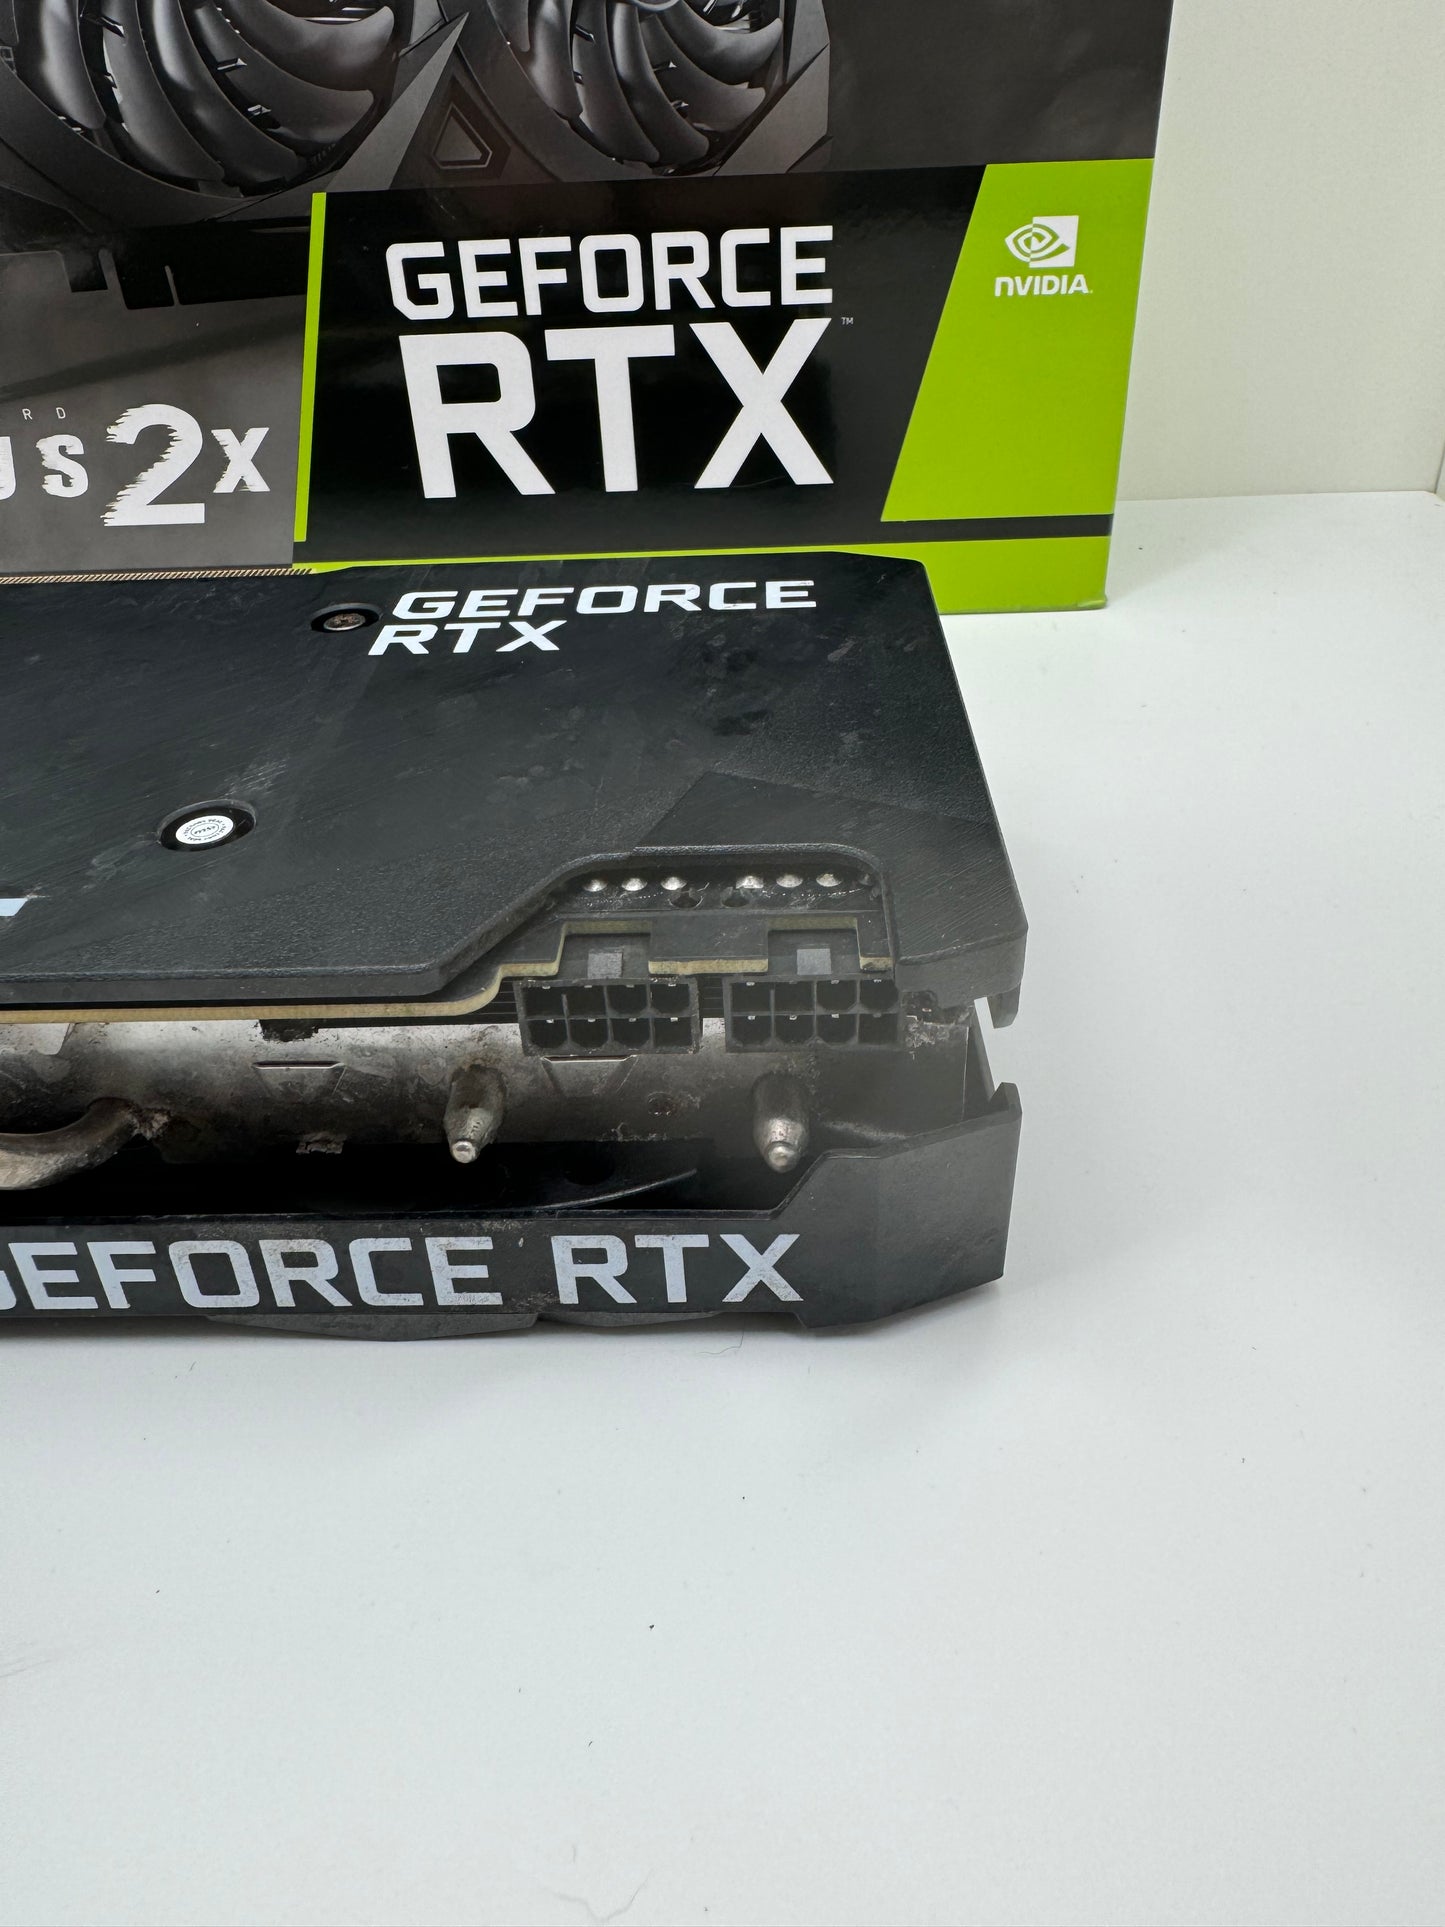 MSI Nvidia GeForce RTX 3070 Ventus 2X OC 8GB GDDR6 - Was £239.99 - B